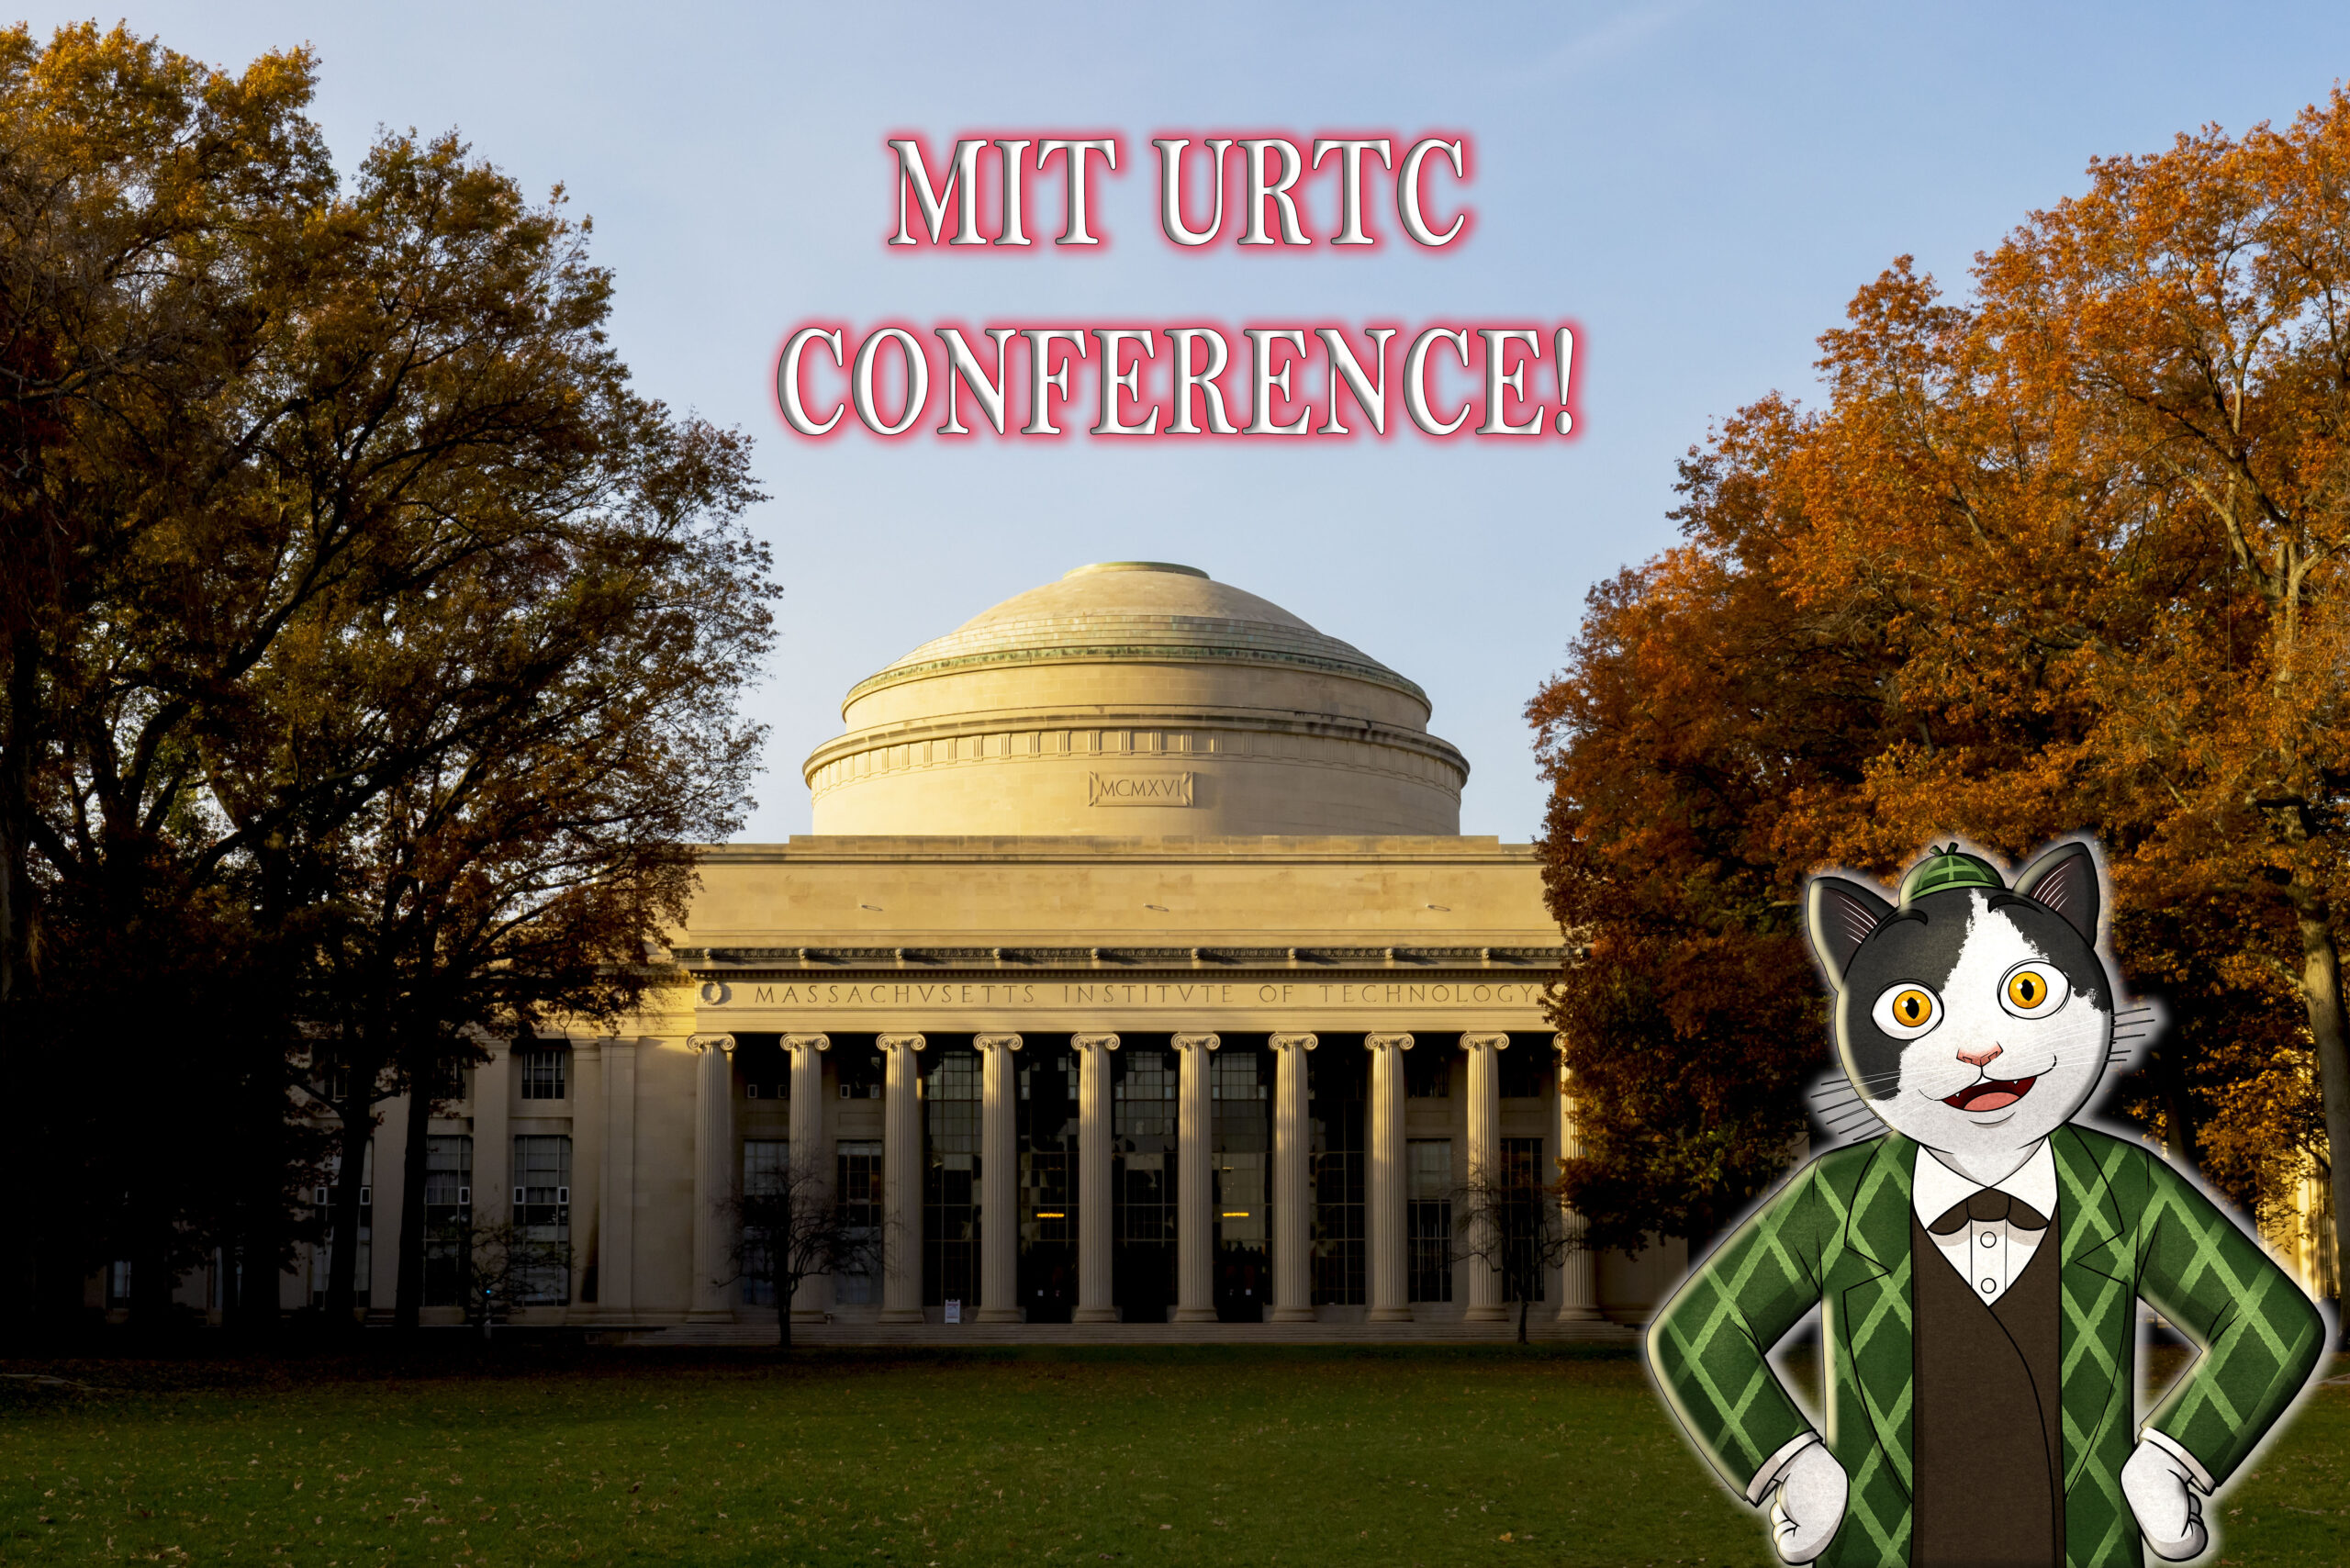 MIT URTC Experience! The Curio Cat